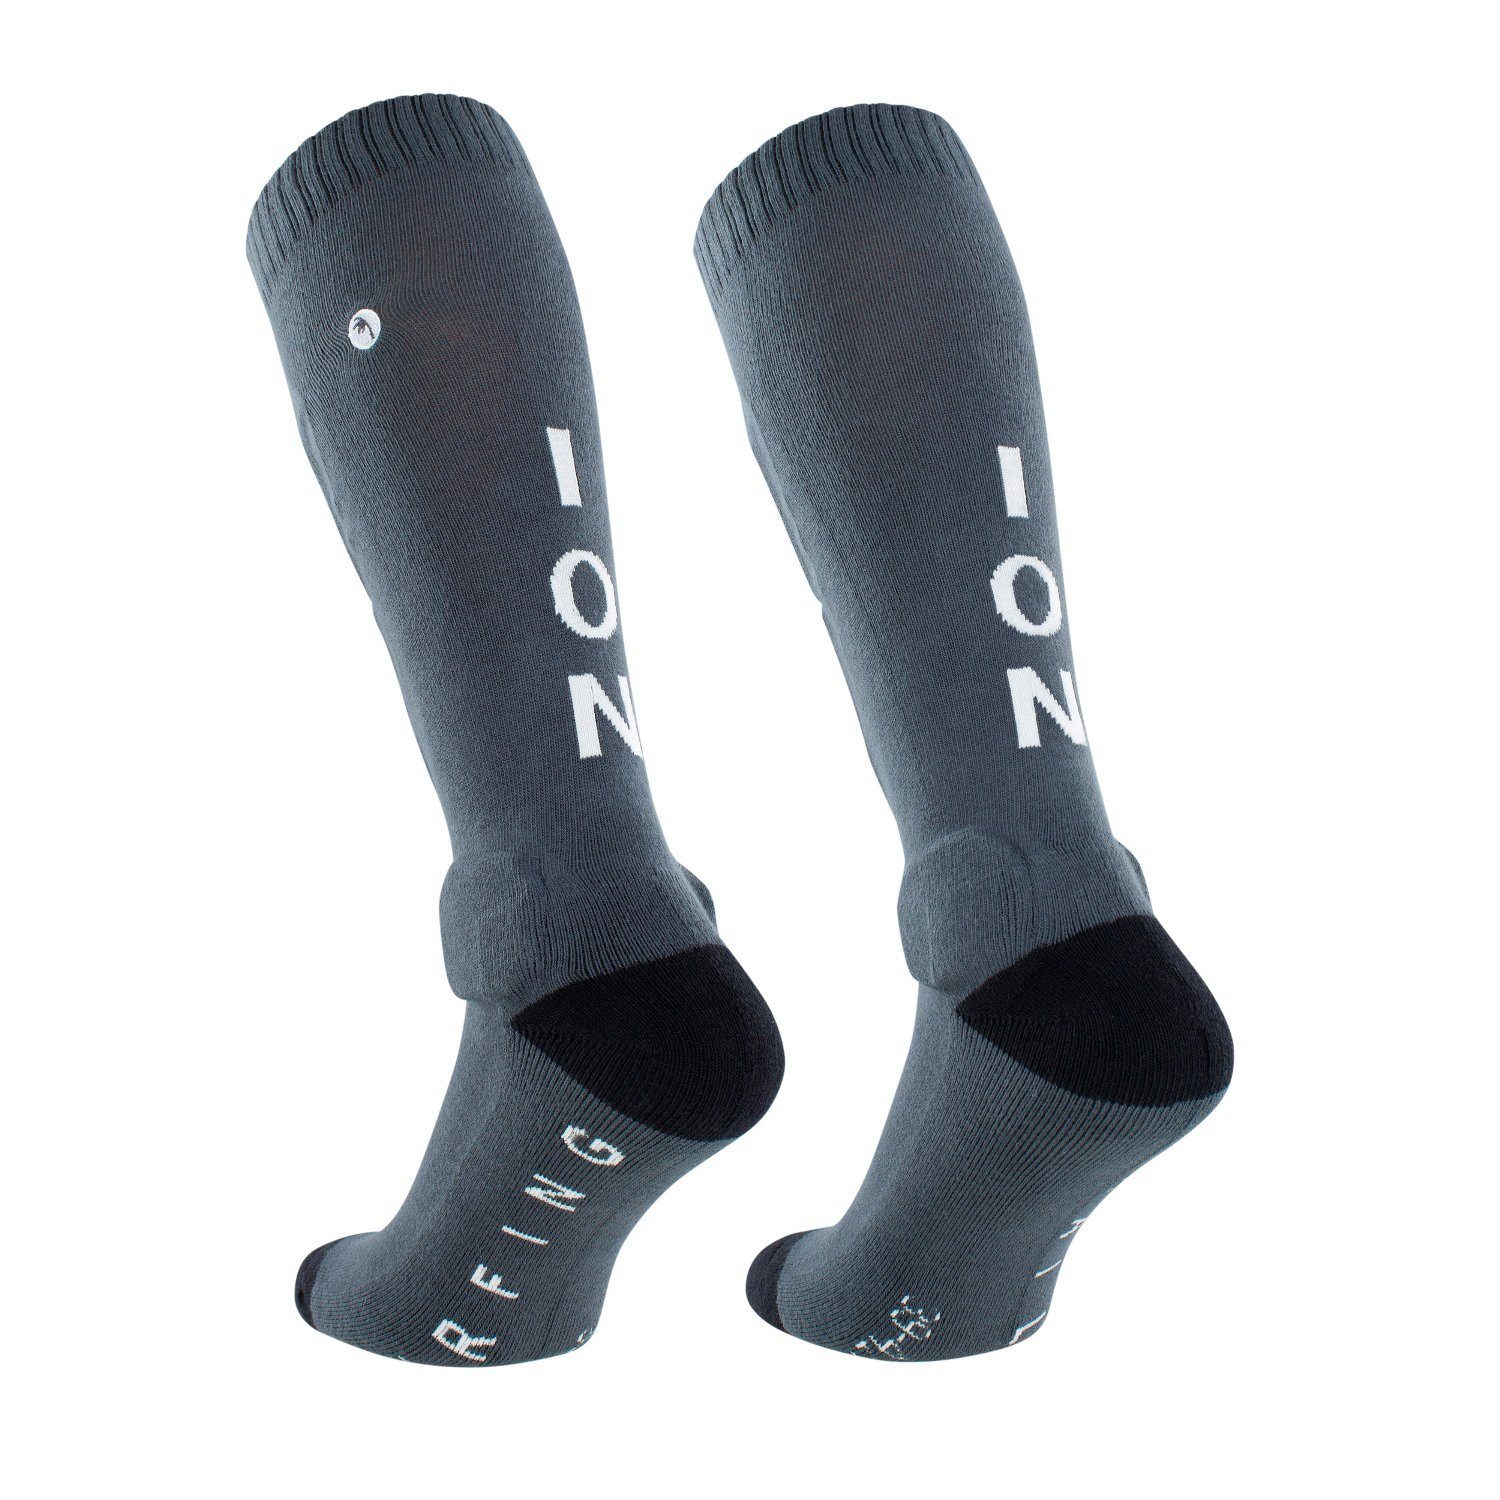 ION Schienbeinschutz Protektorsocken ION Unisex grau BD-Sock